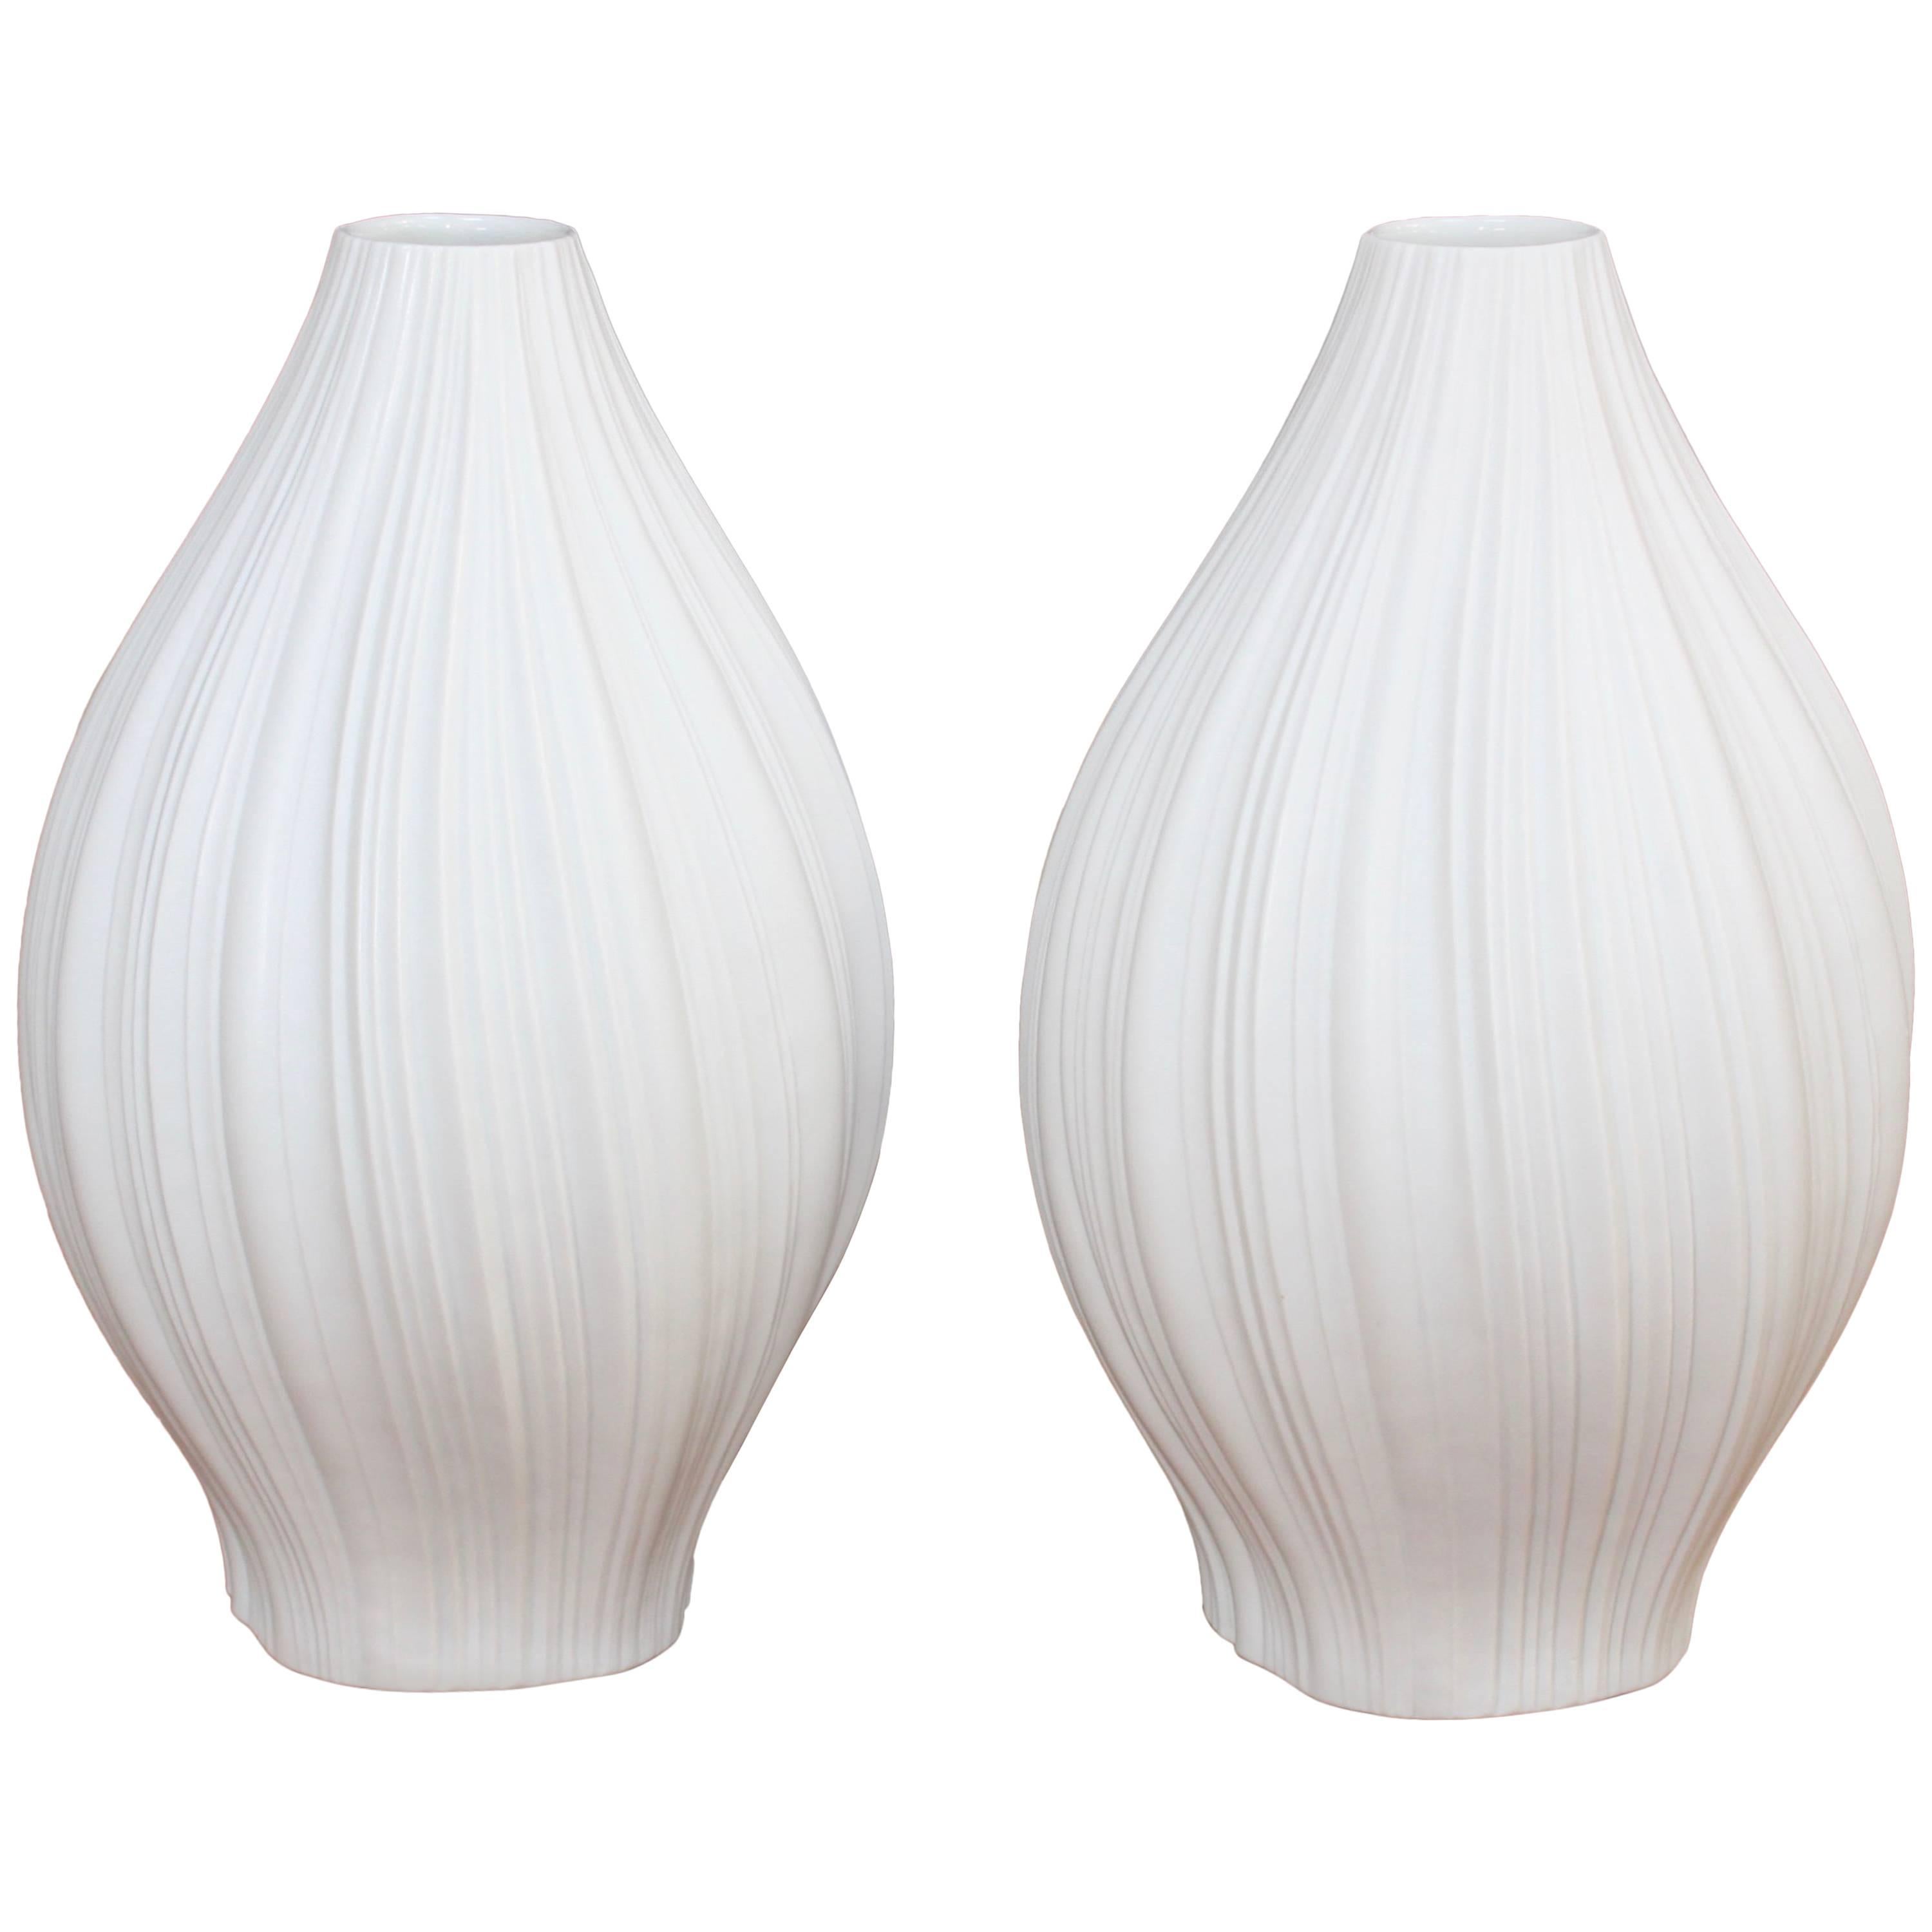 Martin Freyer for Rosenthal Vases